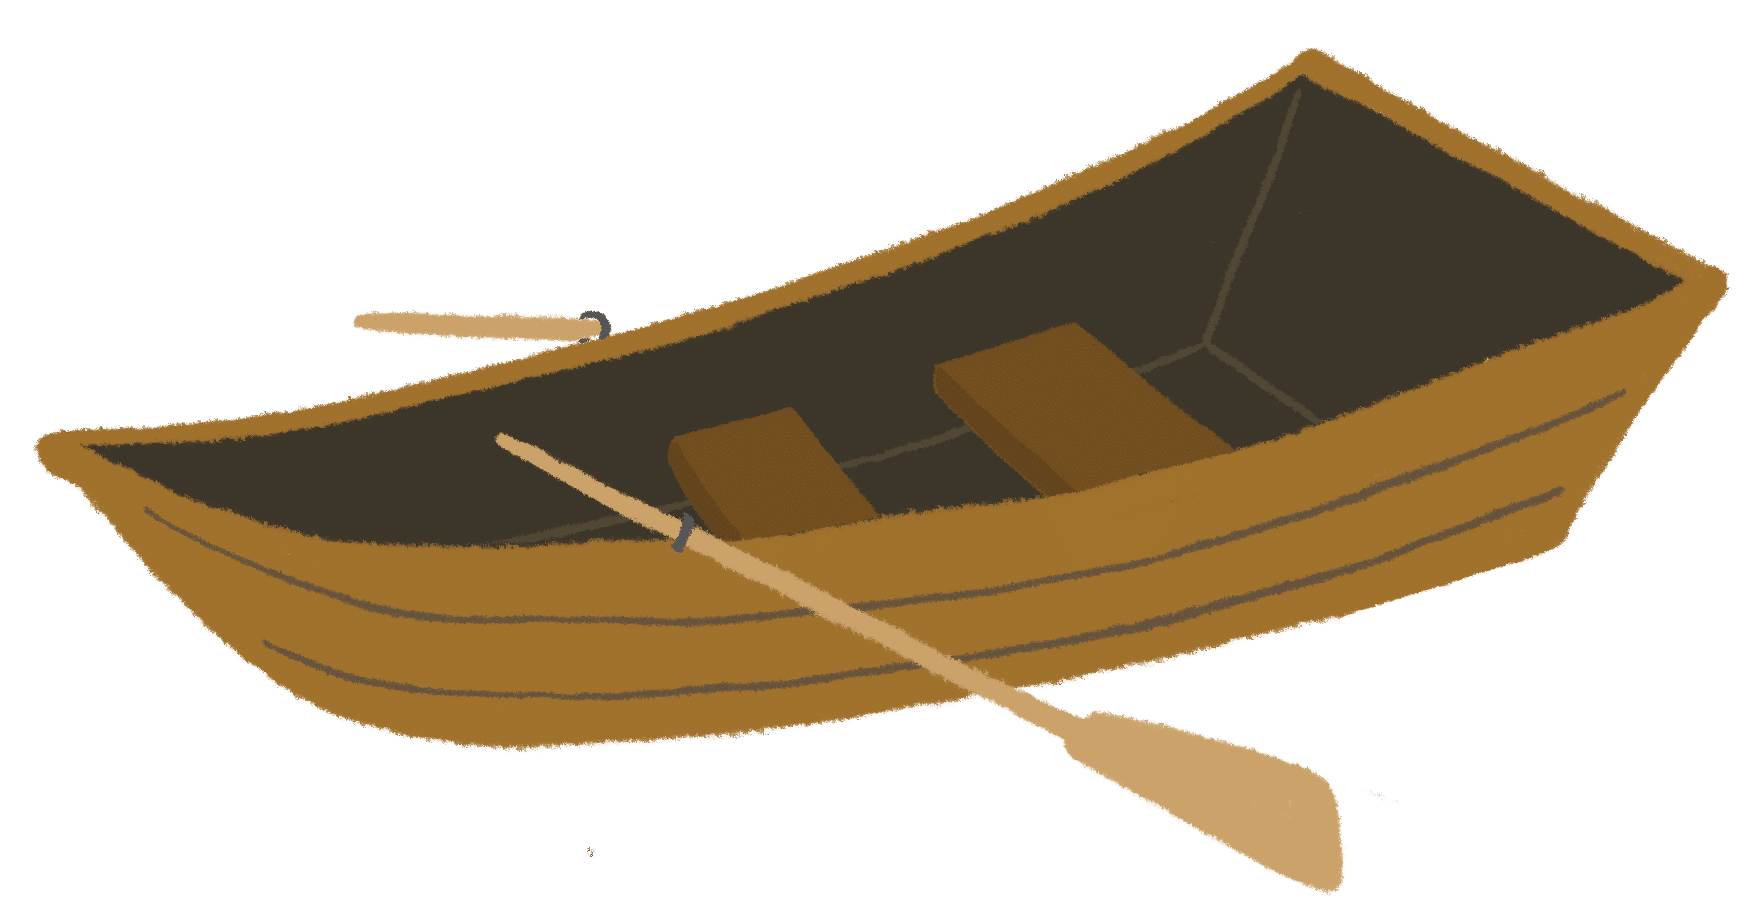 小舟のイラスト 聖書 キリスト教のフリー素材 ペタアート キリスト教福音宣教会